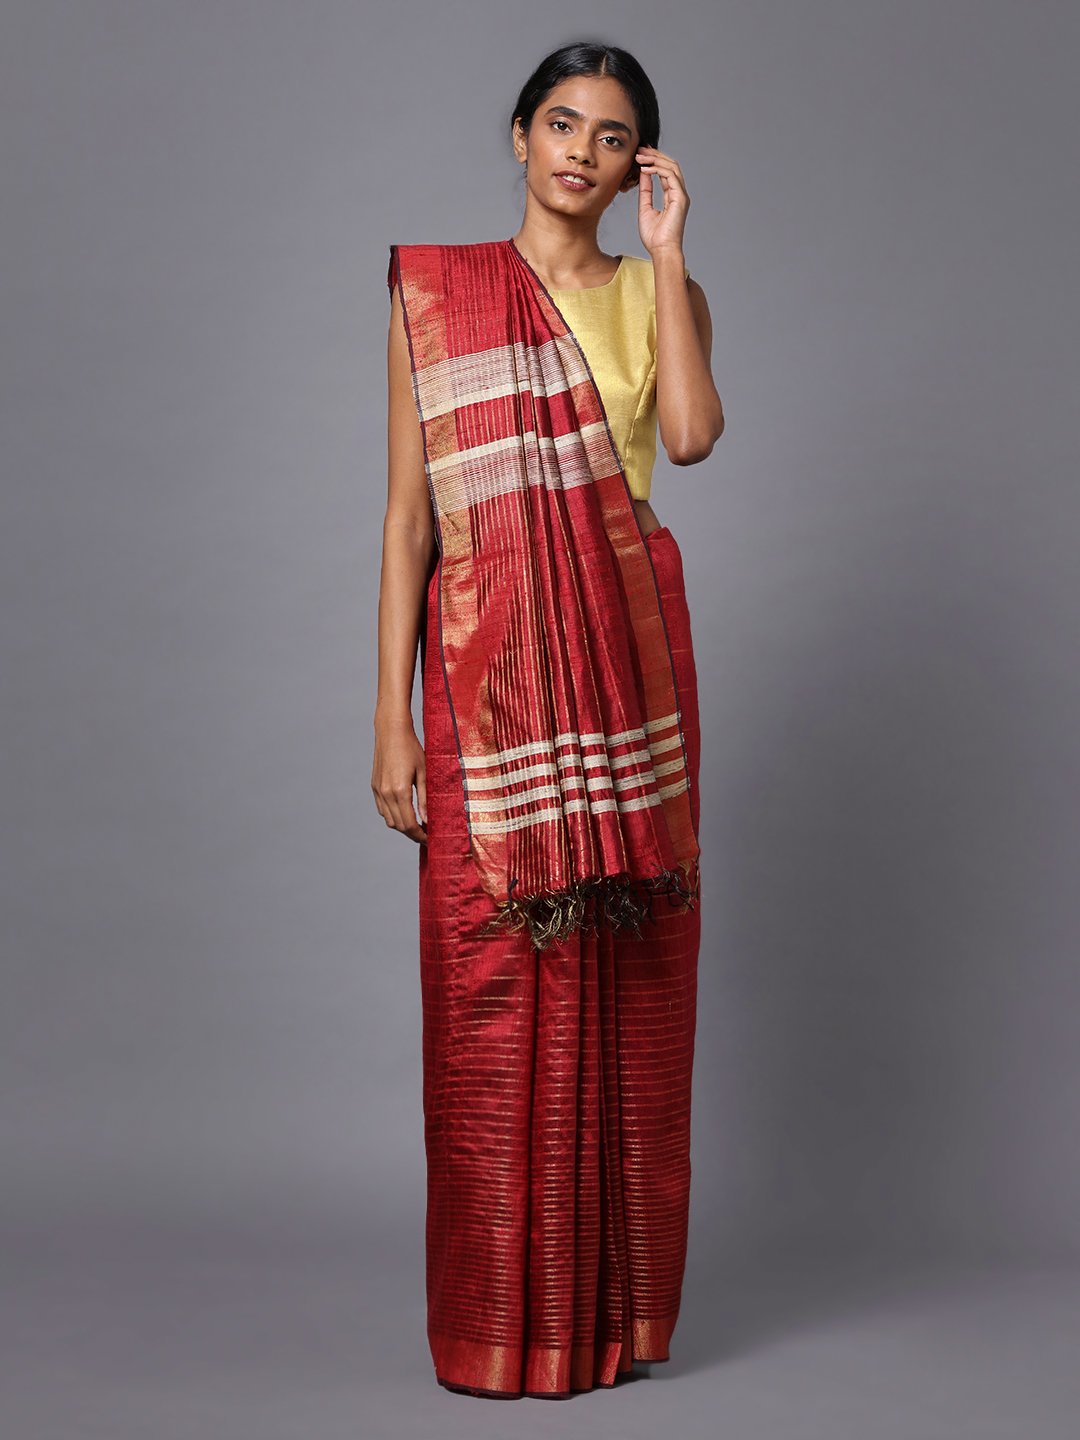 Red maroon handloom tussar silk saree